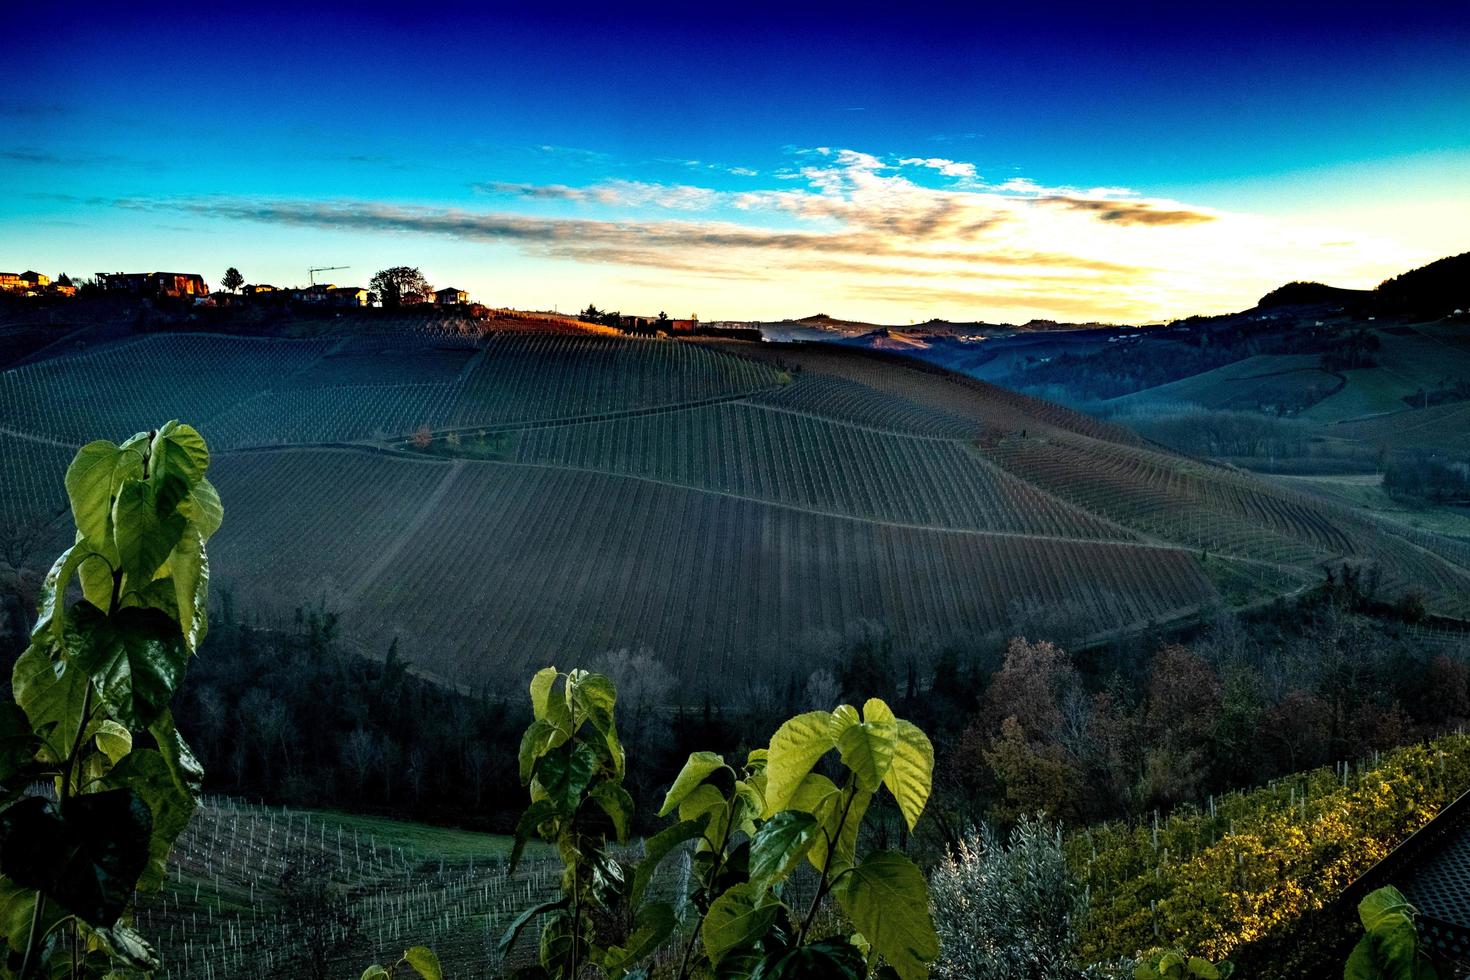 paisajes del langhe piamontés los viñedos los vivos colores del otoño cerca de alba foto